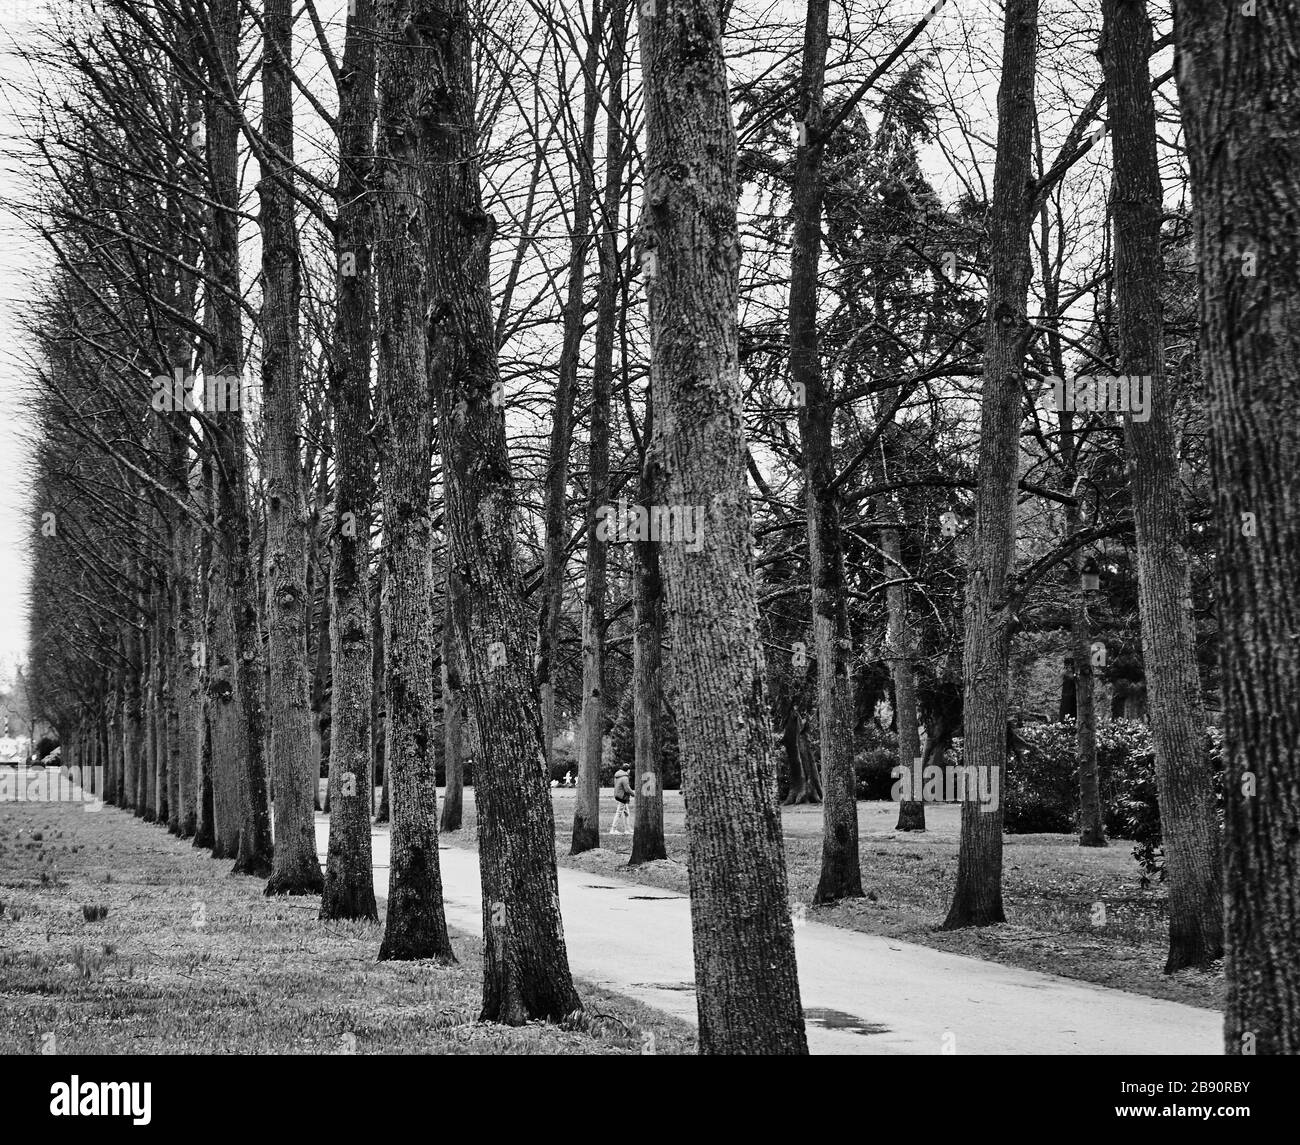 rangée d'arbres sans feuillage et sans feuilles à côté d'un sentier dans un parc, noir et blanc avec un contraste exagéré, abstrait Banque D'Images